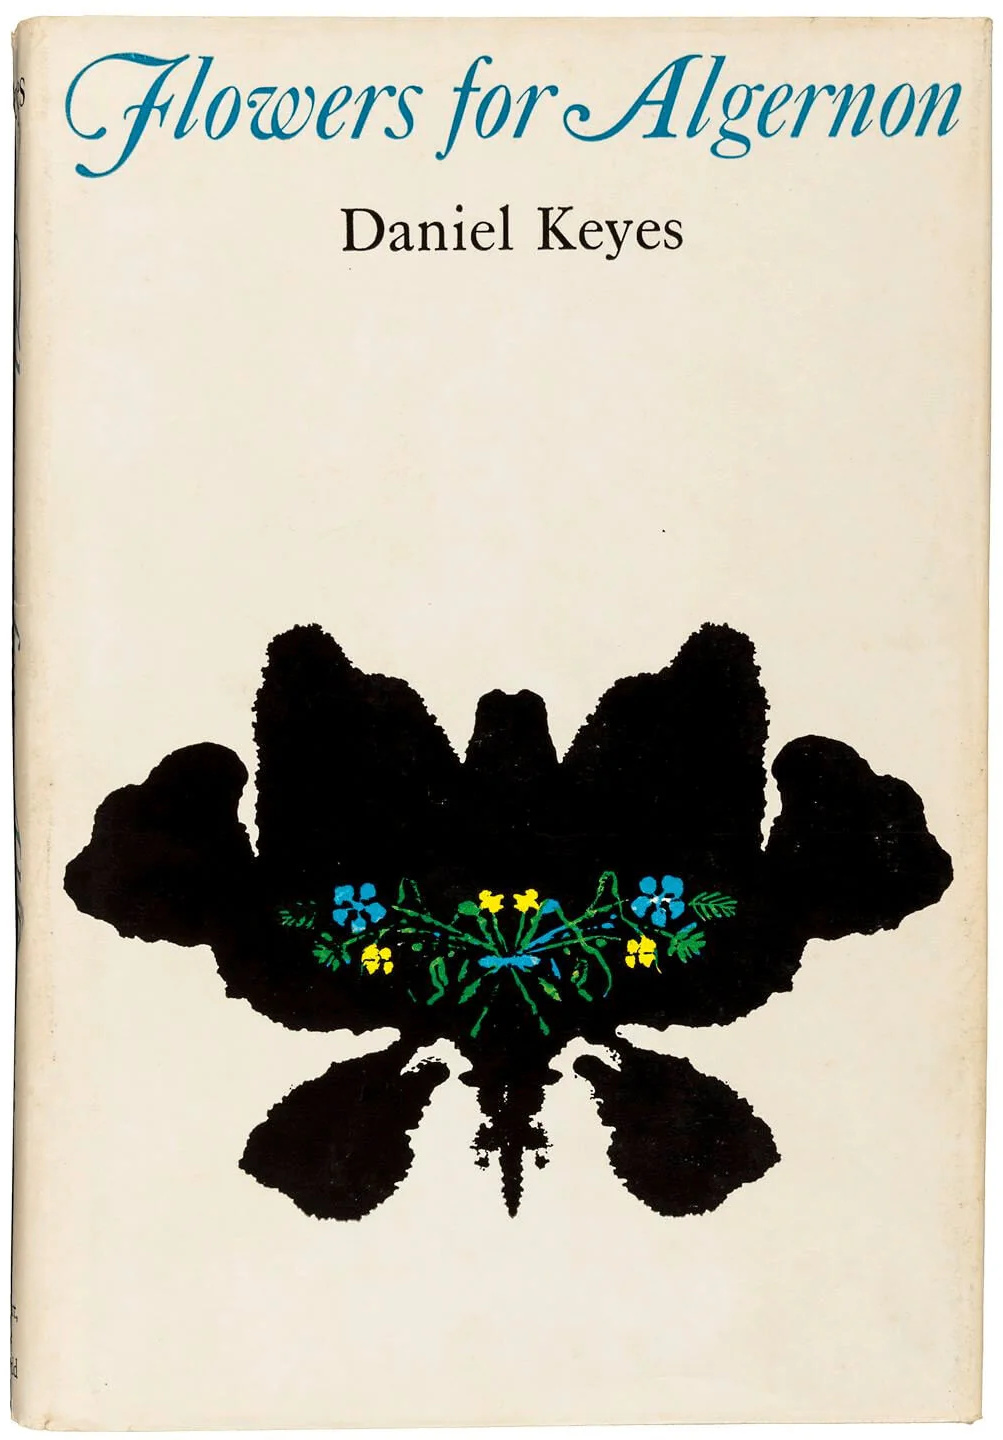 Daniel Keyes: Flowers for Algernon (Hardcover, 1966, Harcourt, Brace & World)